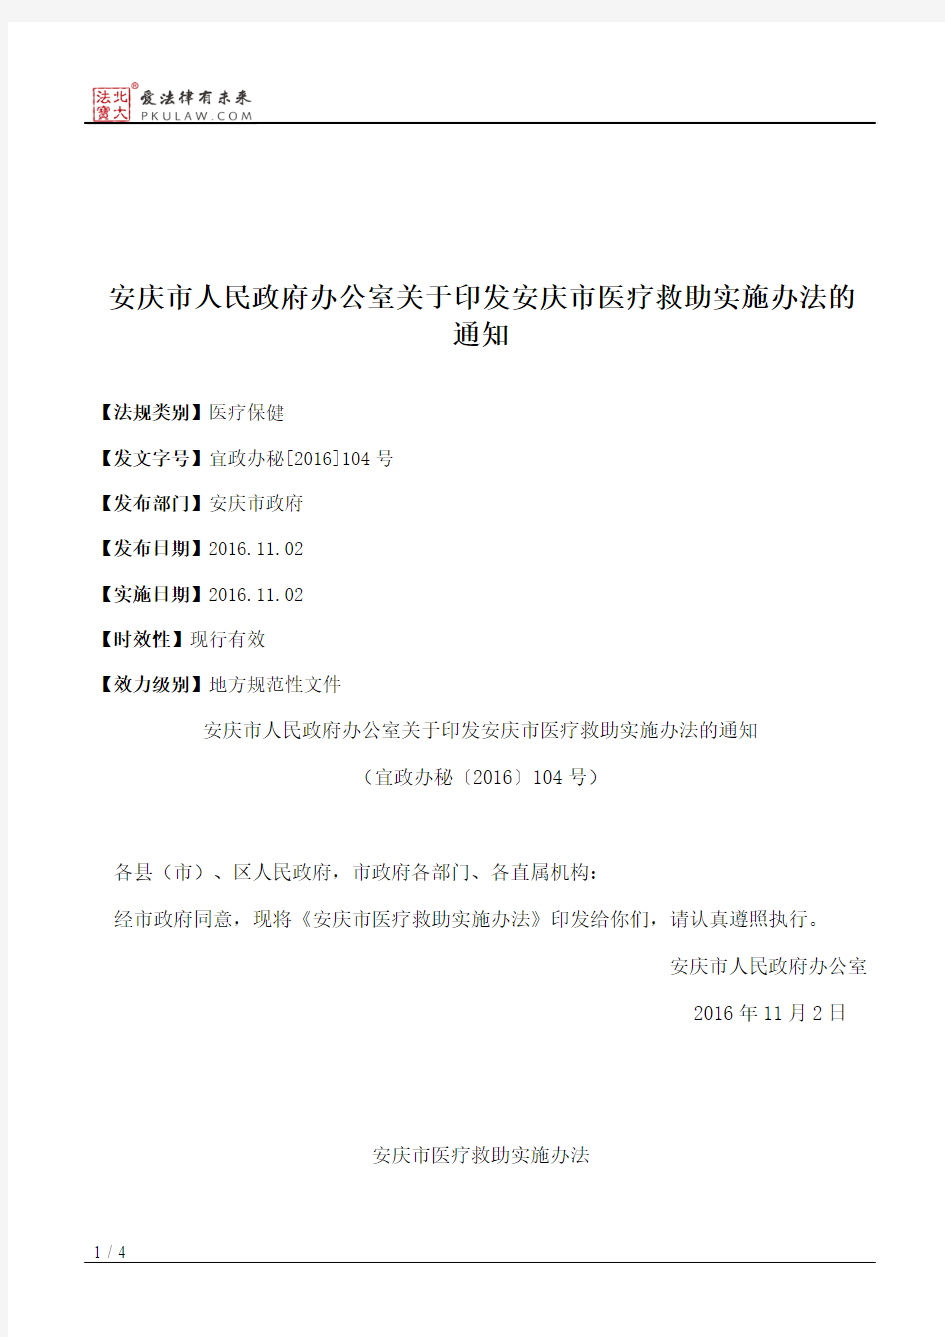 安庆市人民政府办公室关于印发安庆市医疗救助实施办法的通知